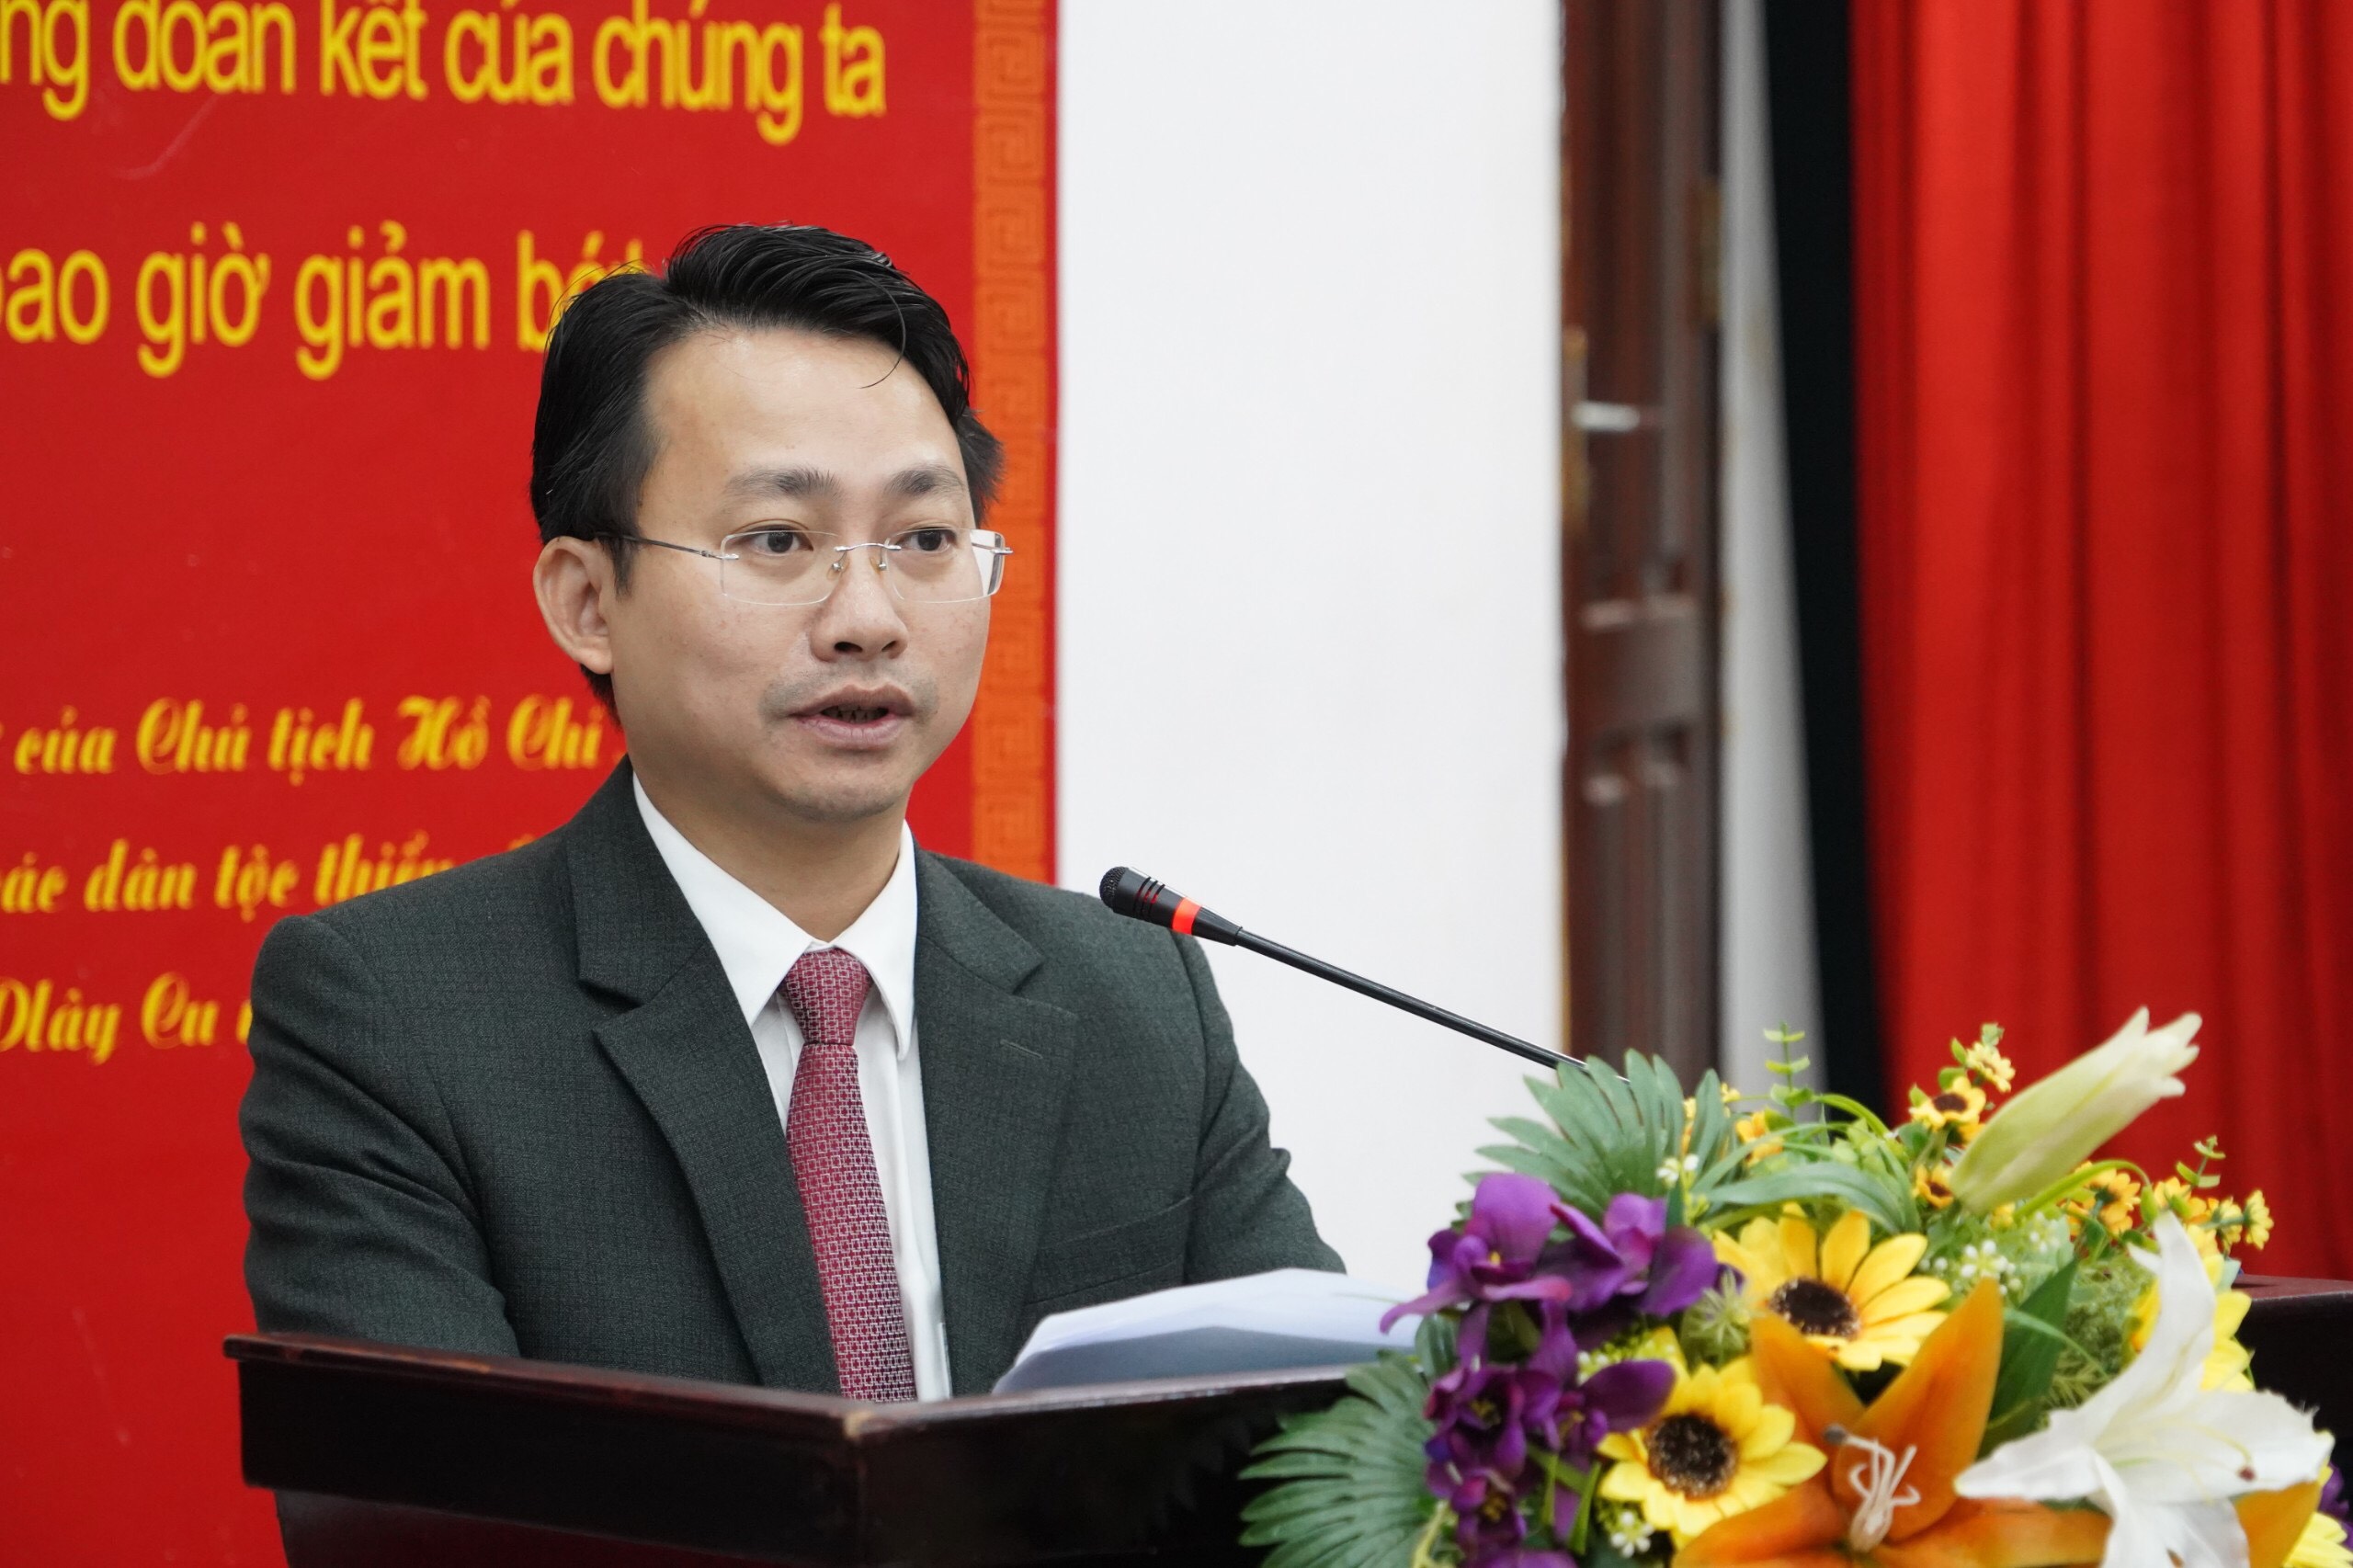 Ông Trần Trung Hiếu, Phó Giám đốc Sở Du lịch Hà Nội phát biểu tại Tọa đàm